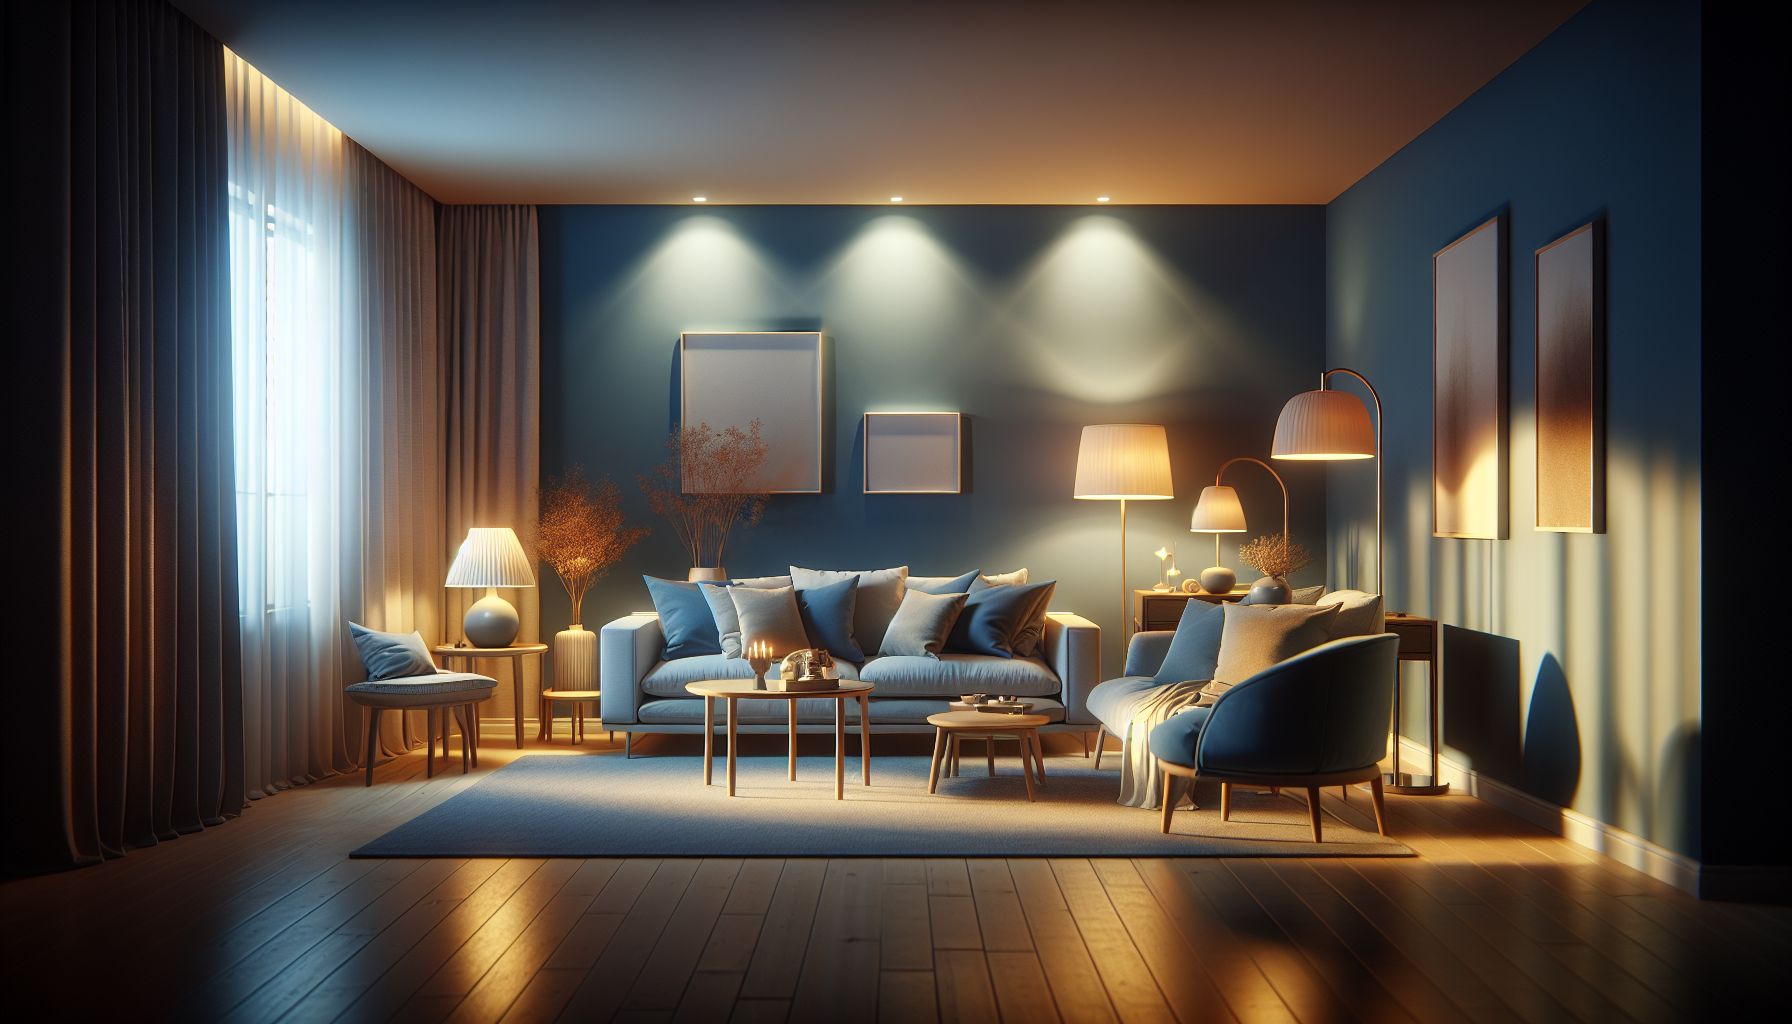 Wohnzimmer in Blau: Ideen und Inspiration- Beleuchte mit warmen Lichtquellen